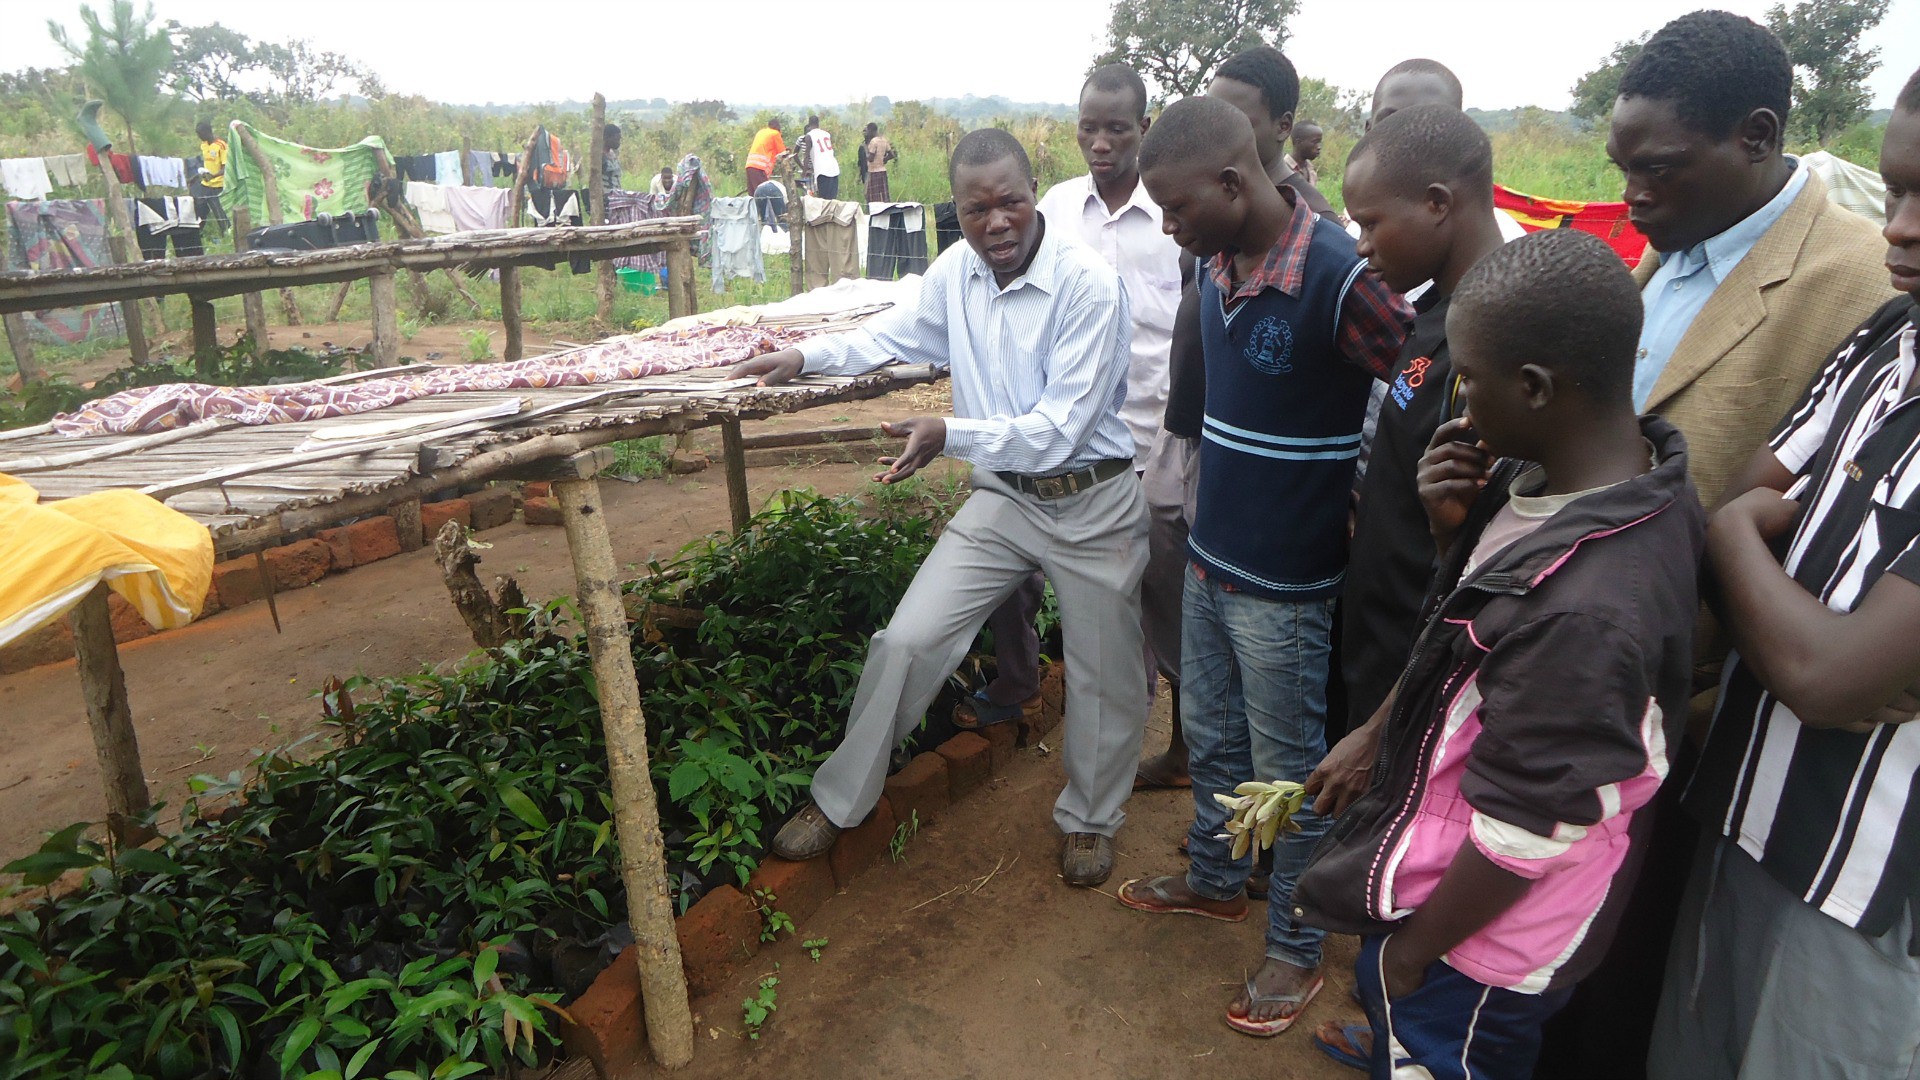 Omoana participe à la construction d'un Centre et forme des étudiants en agriculture biologique en Ouganda. (Photo: AssociationOmoana)